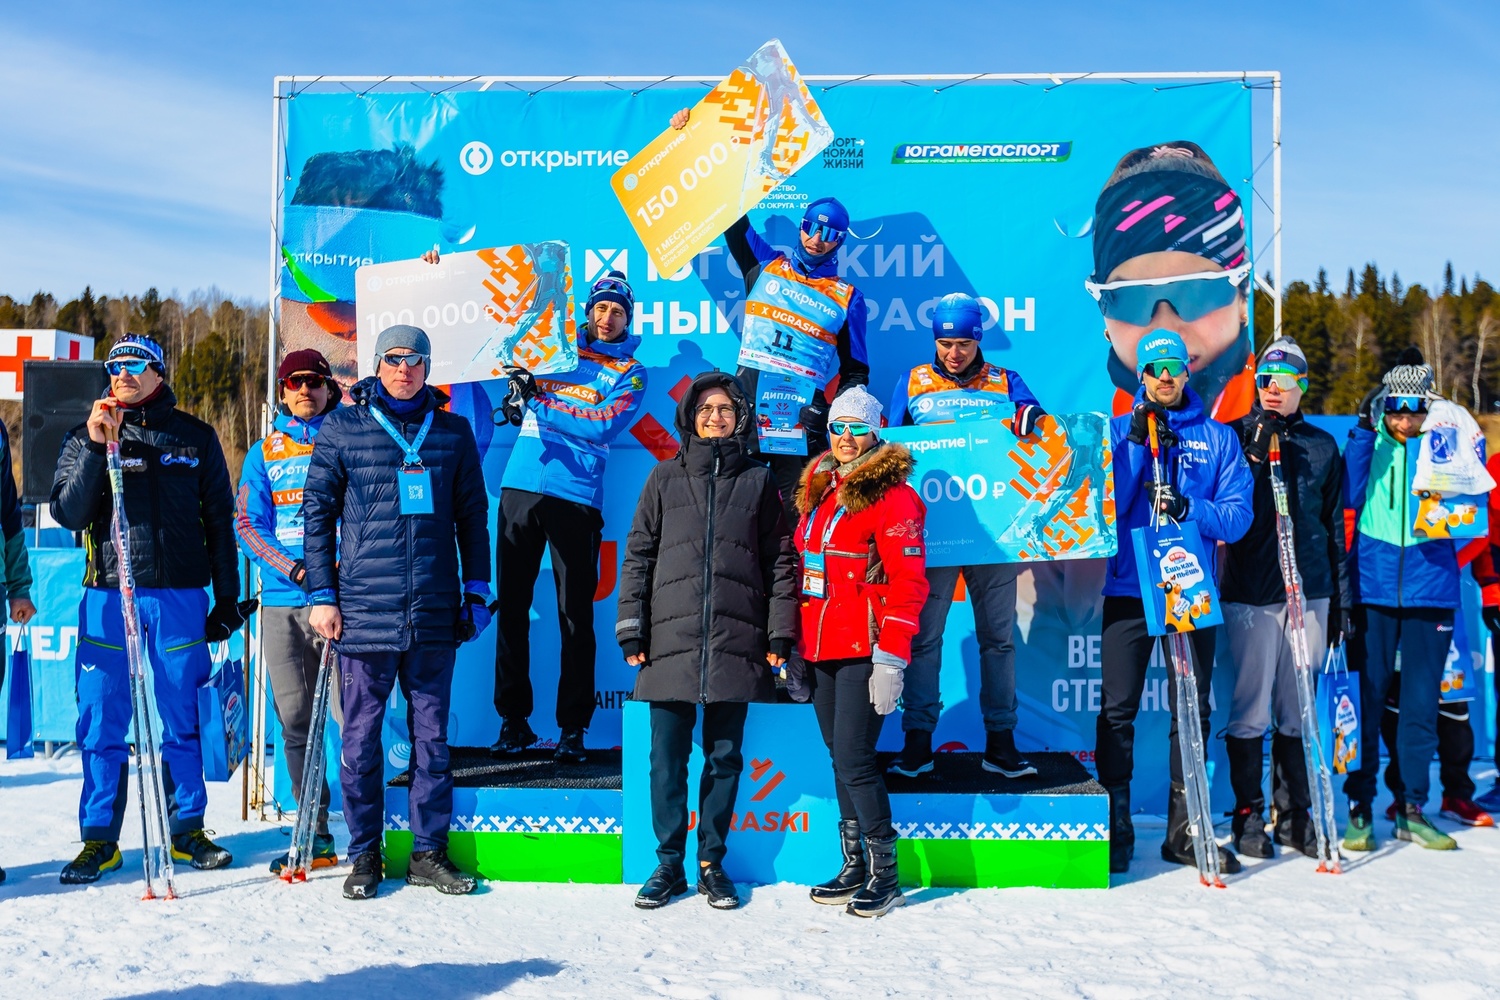 Yugra ski marathon: strictly on the track